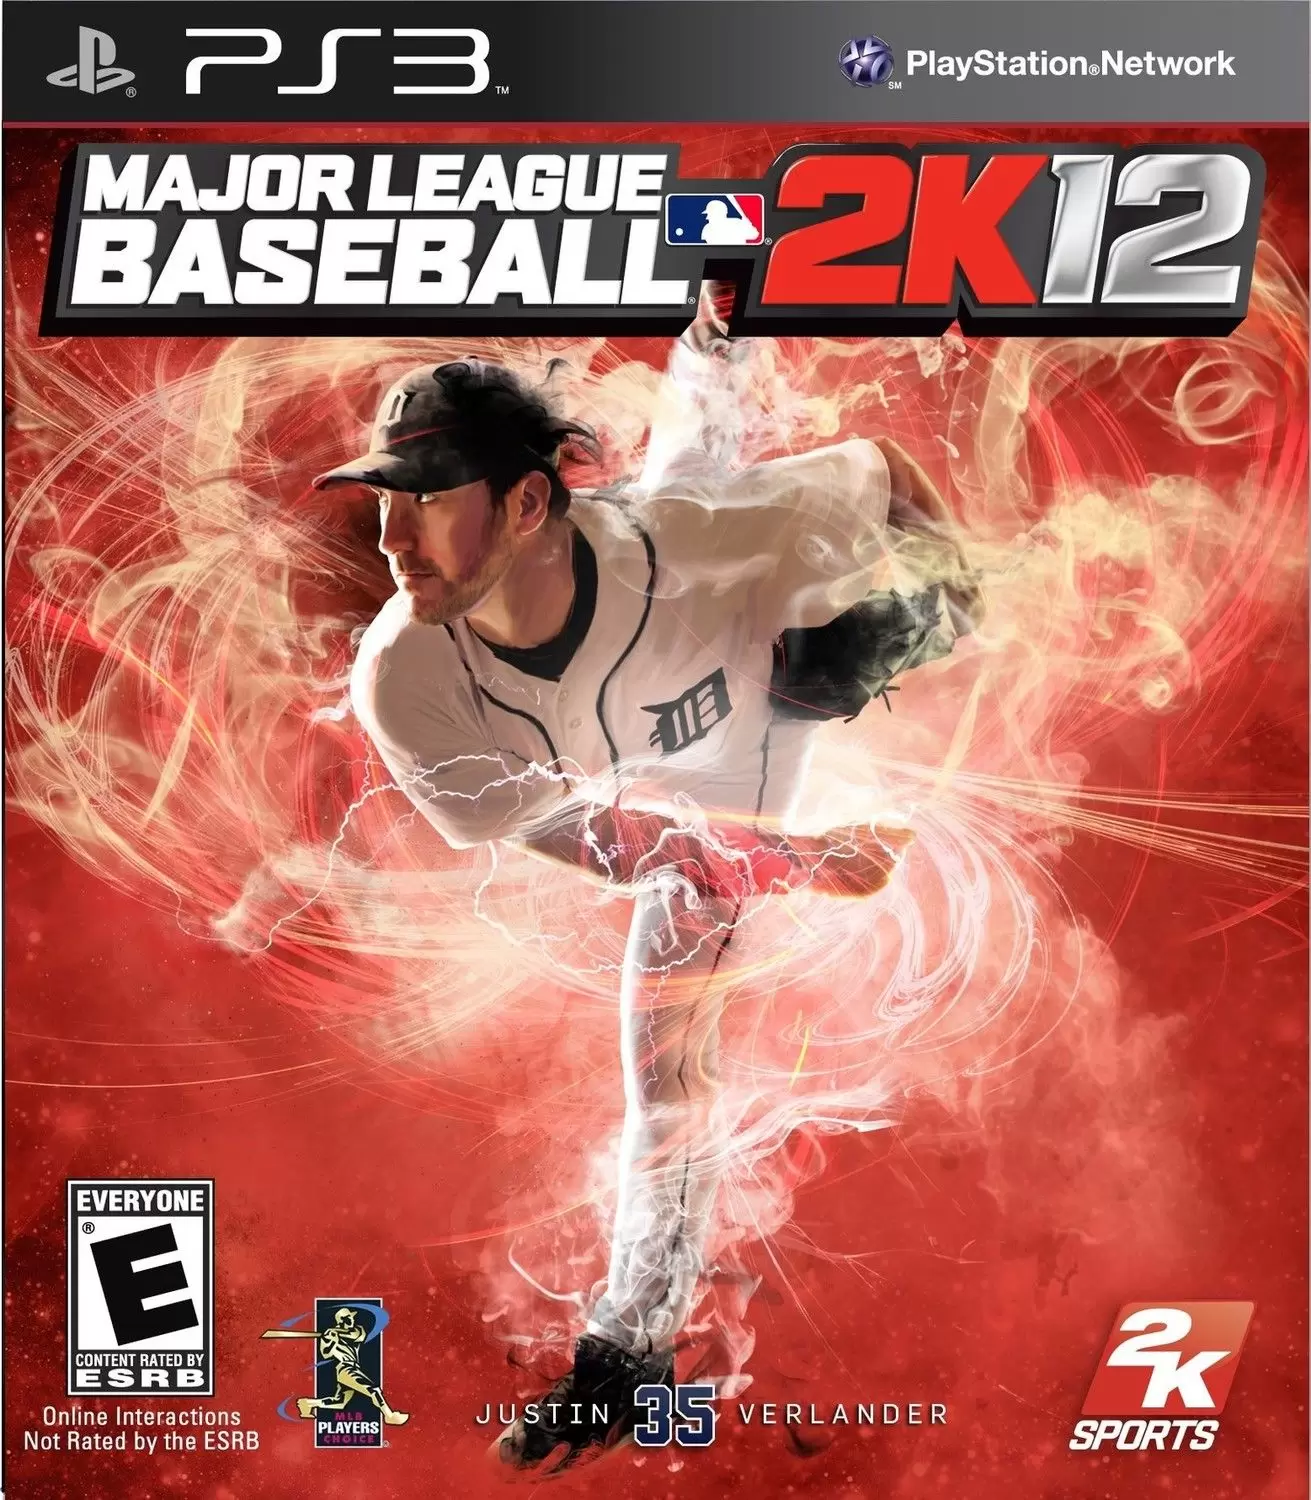 PS3 Games - Major League Baseball 2K12